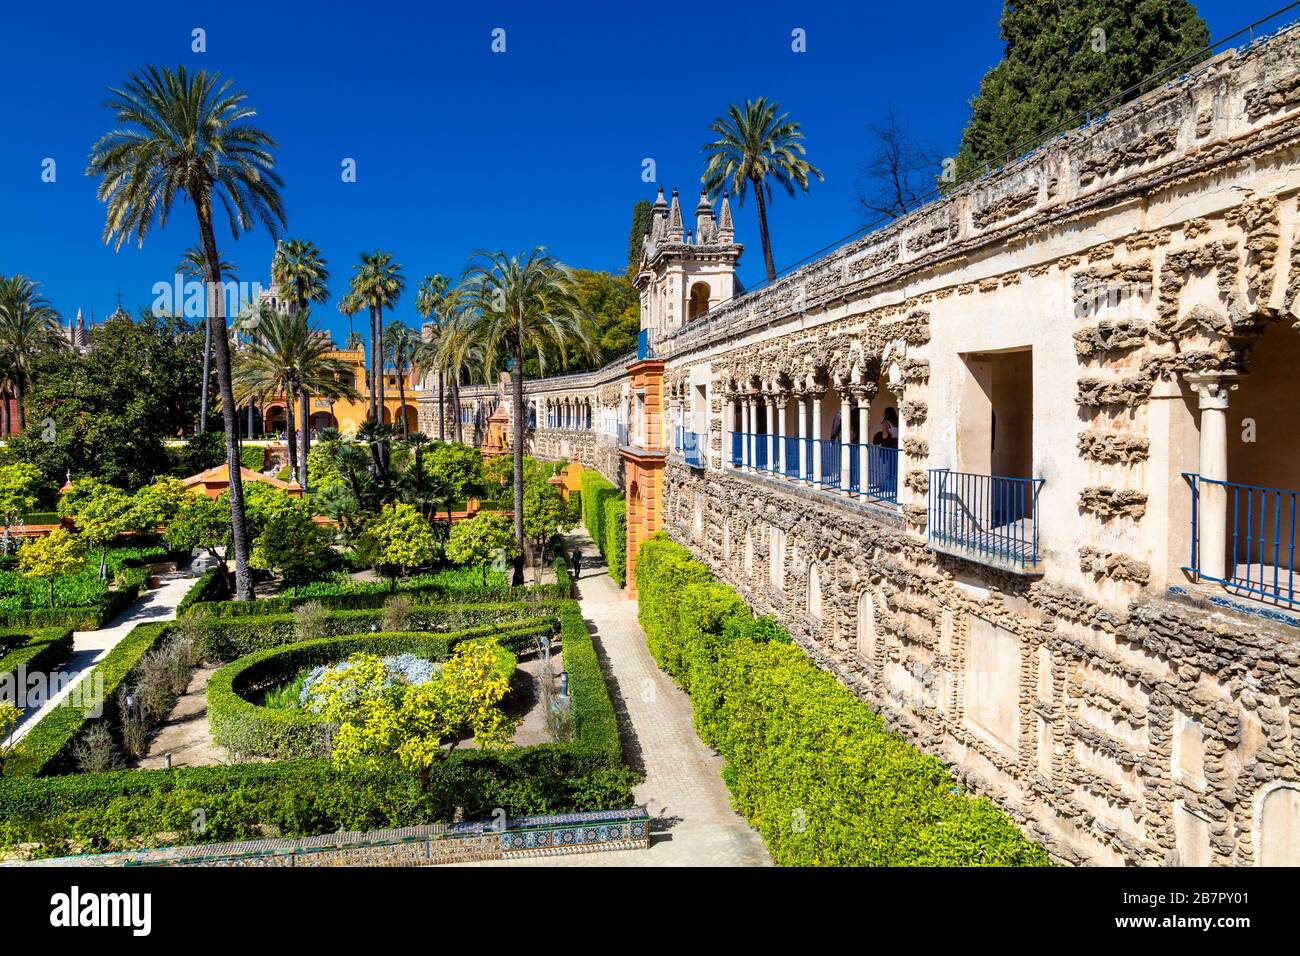 Extérieur de la Galería del Grutesco (galerie Grotto) et jardins avec palmiers, Royal Alcázar de Séville, Espagne Banque D'Images